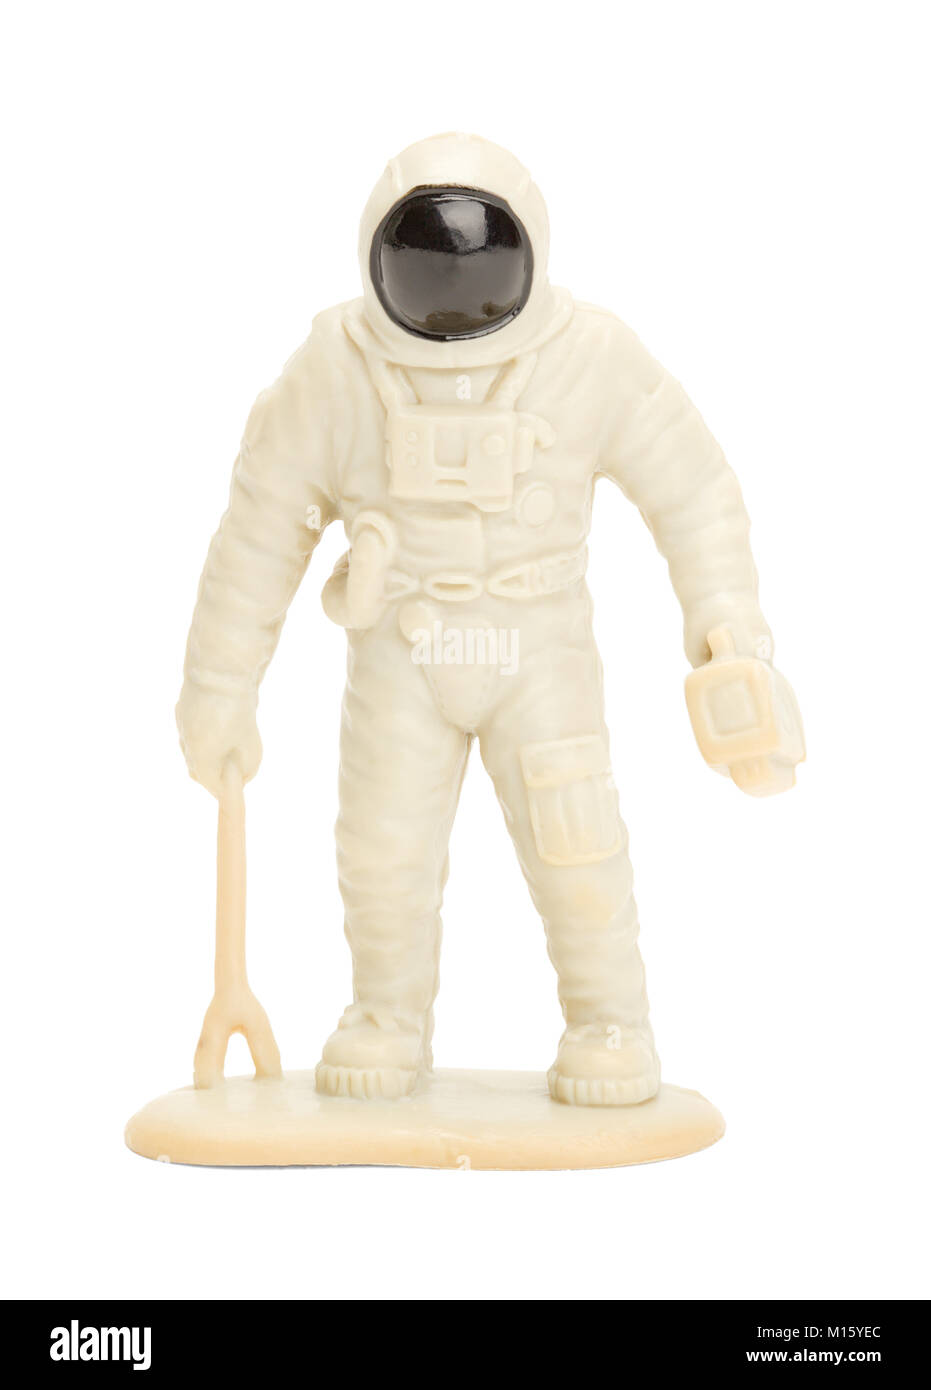 Kunststoff Spielzeug Astronaut isoliert auf einem weißen Hintergrund. Stockfoto